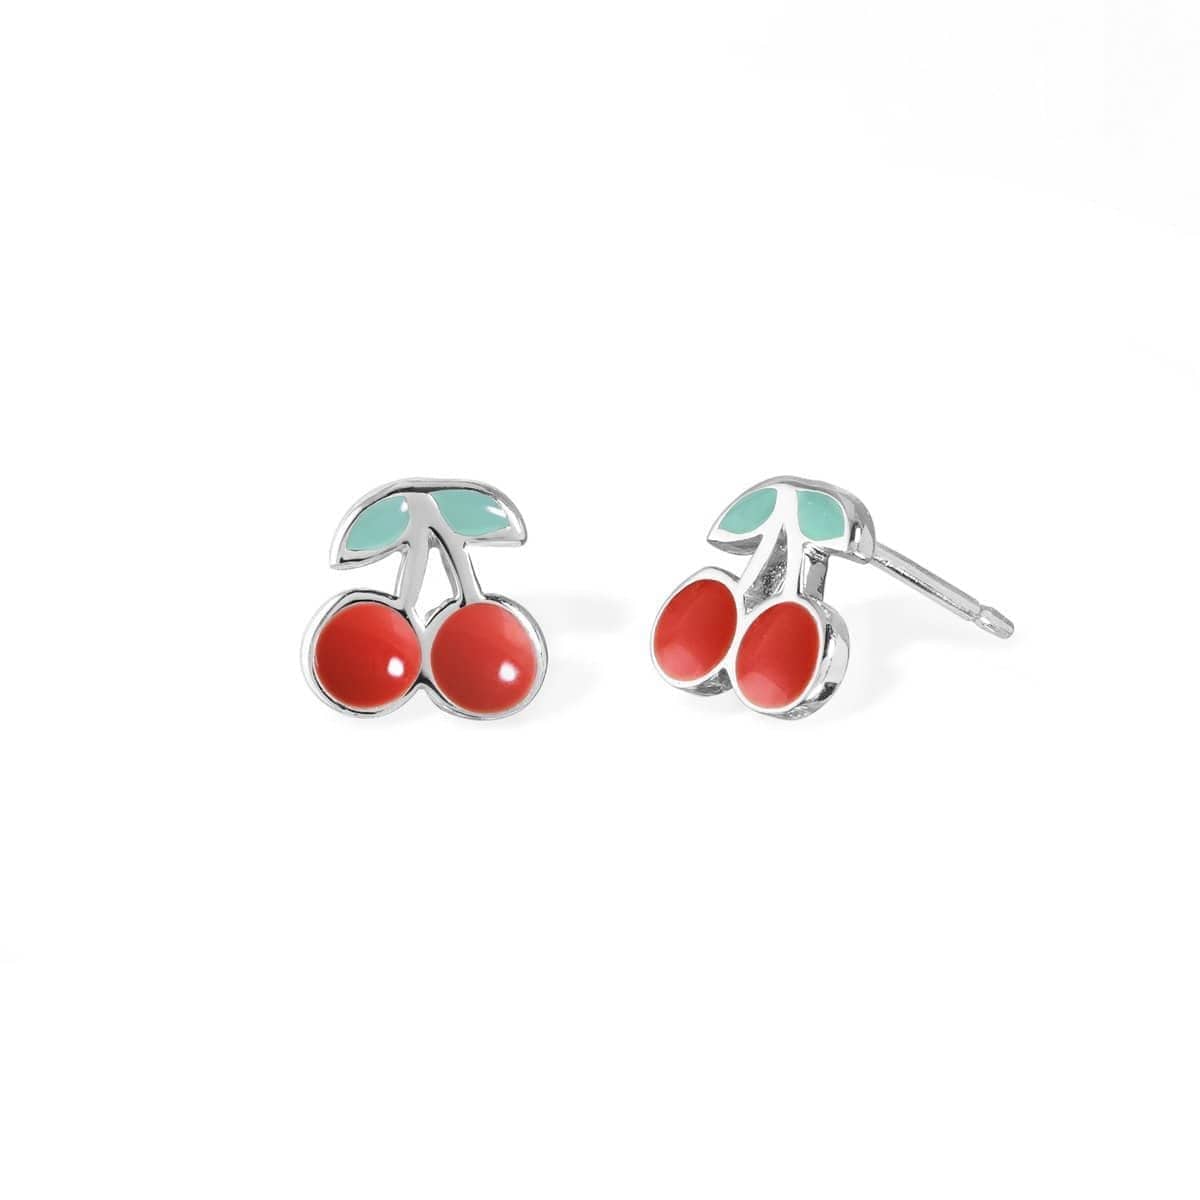 Boma Jewelry Earrings Cherry Stud Earrings